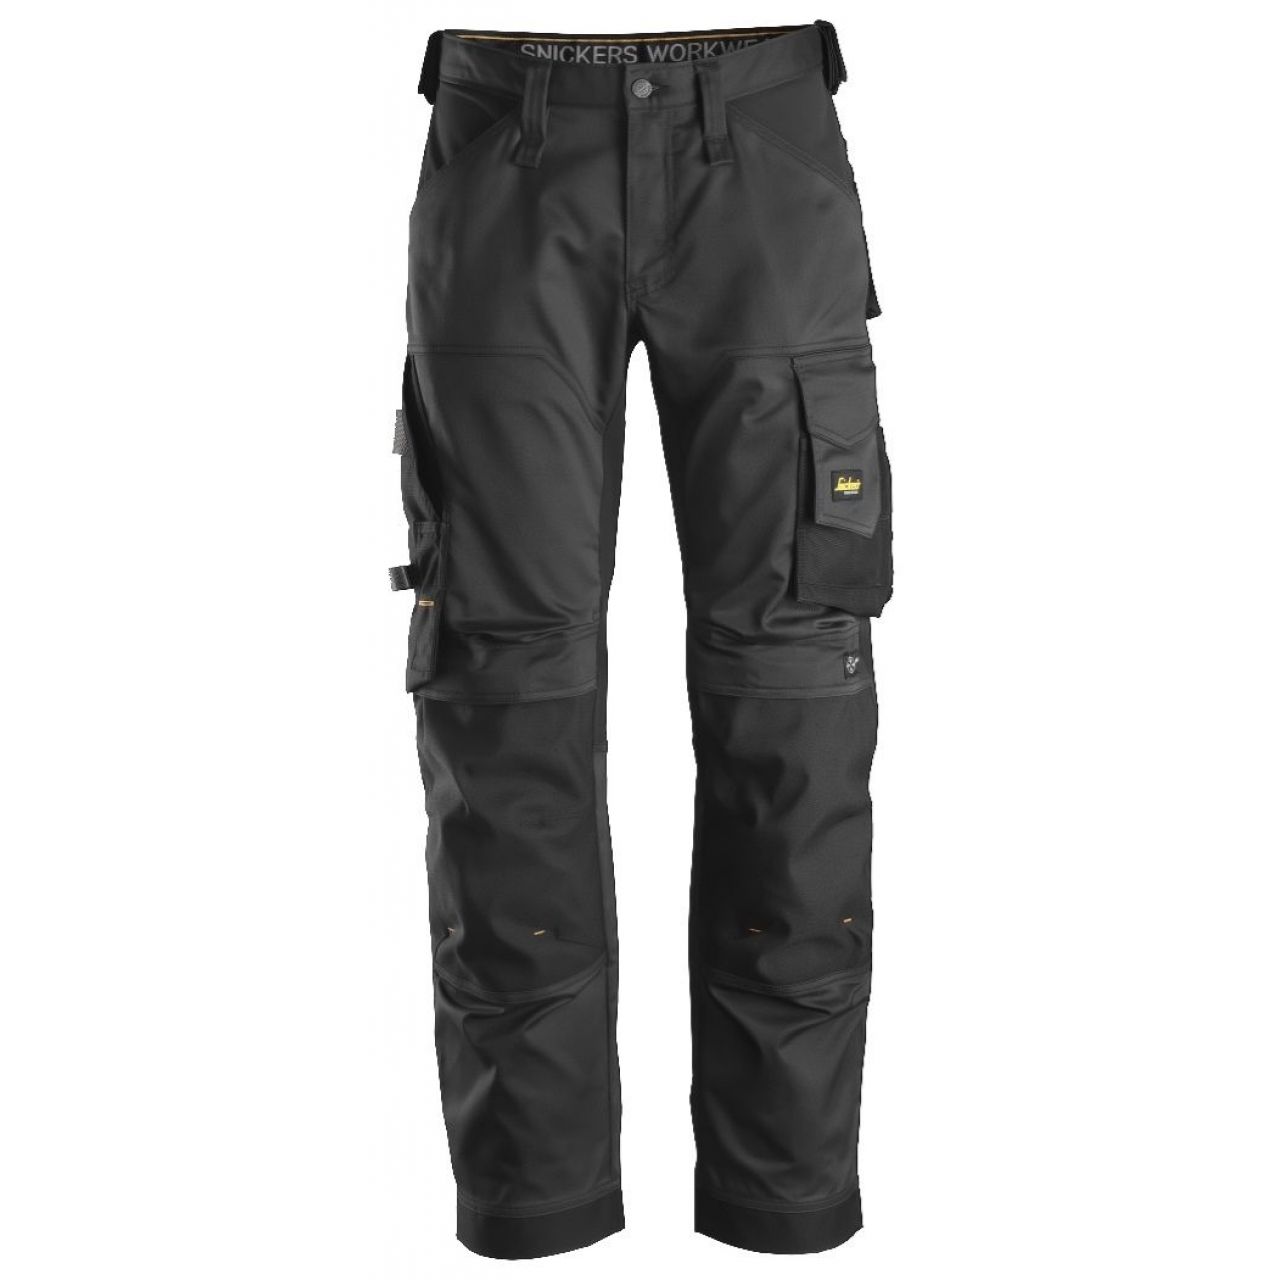 Pantalon elastico ajuste holgado AllroundWork negro talla 160